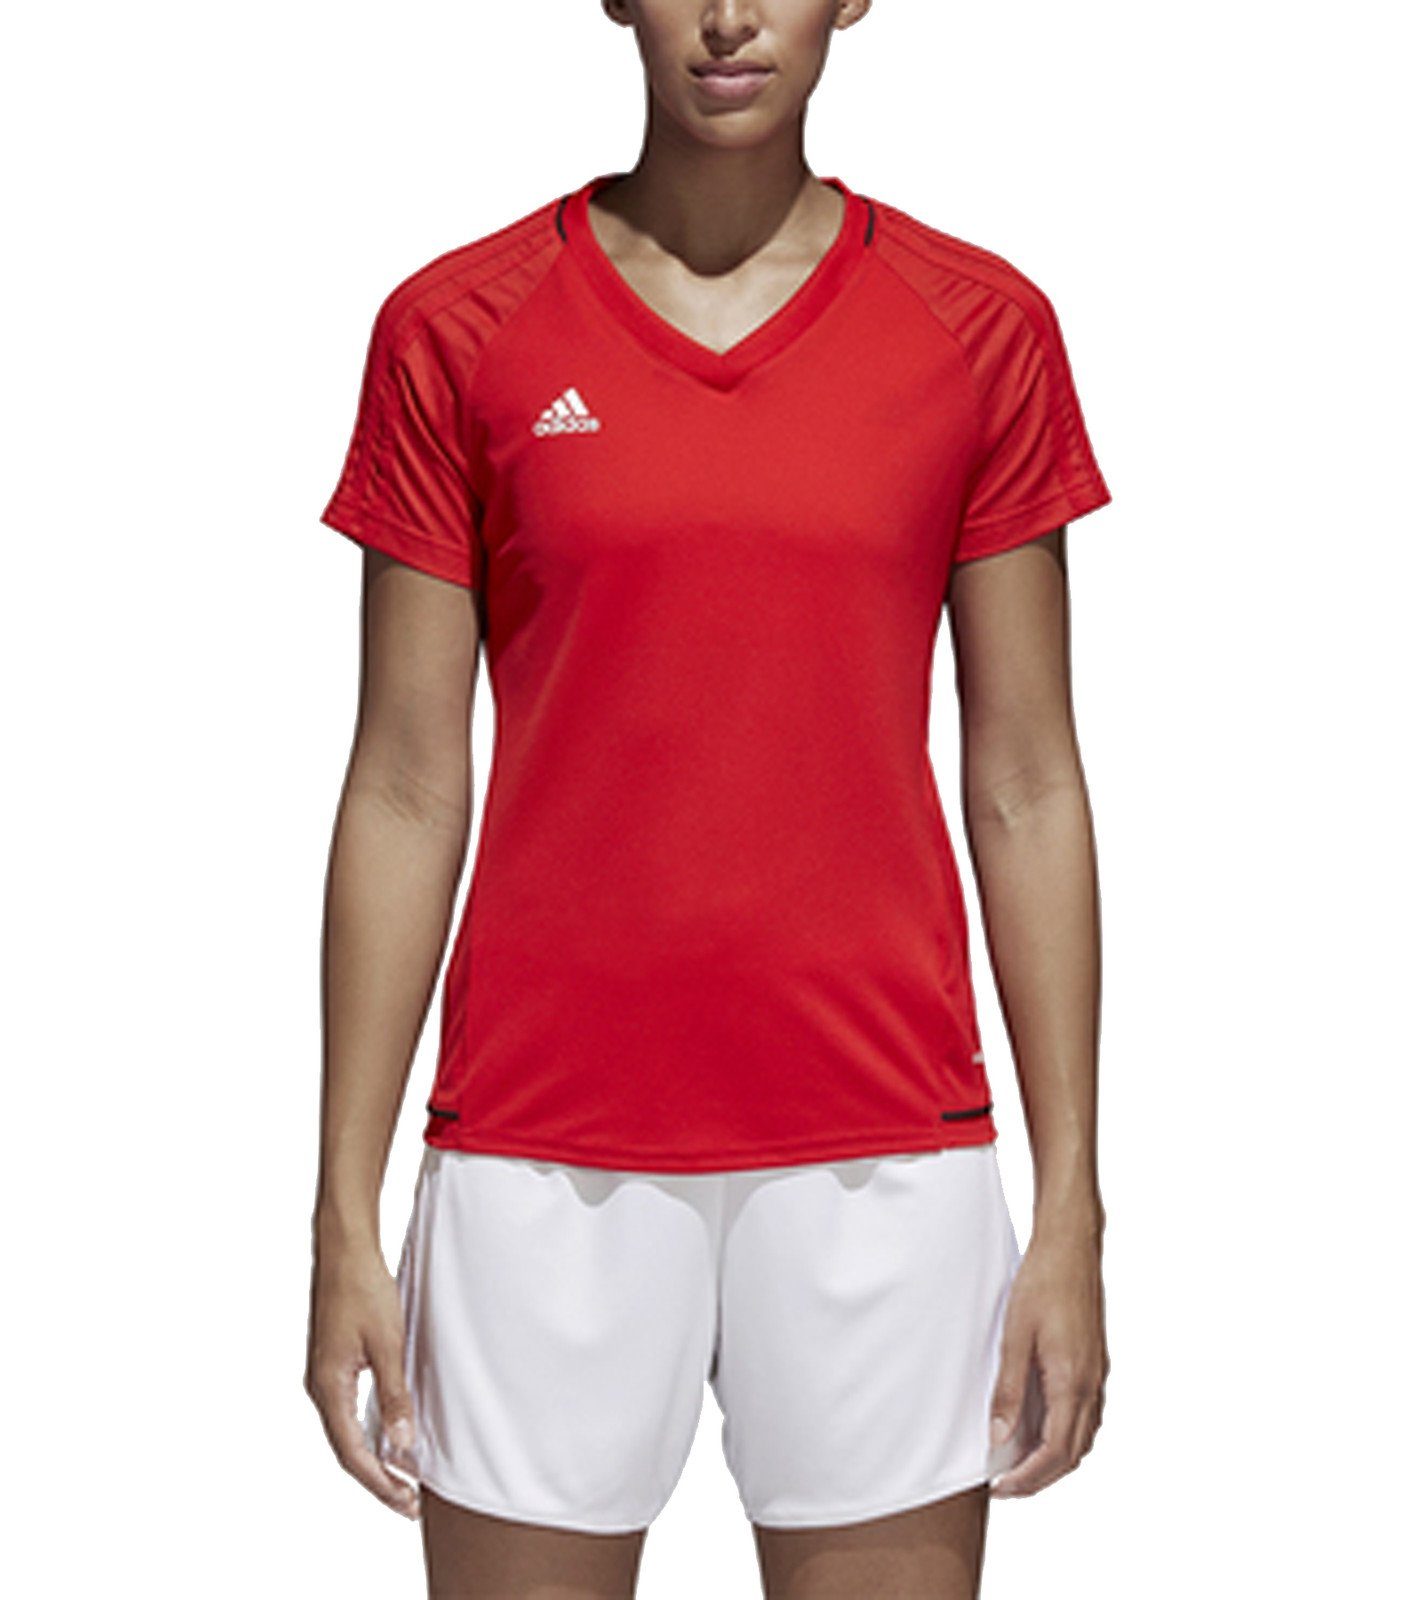 adidas Rundhalsshirt »adidas Adizero Sport-Shirt bequemes Damen Fußball-T- Shirt mit Climacool-Technologie Trainings-Shirt Rot« online kaufen | OTTO